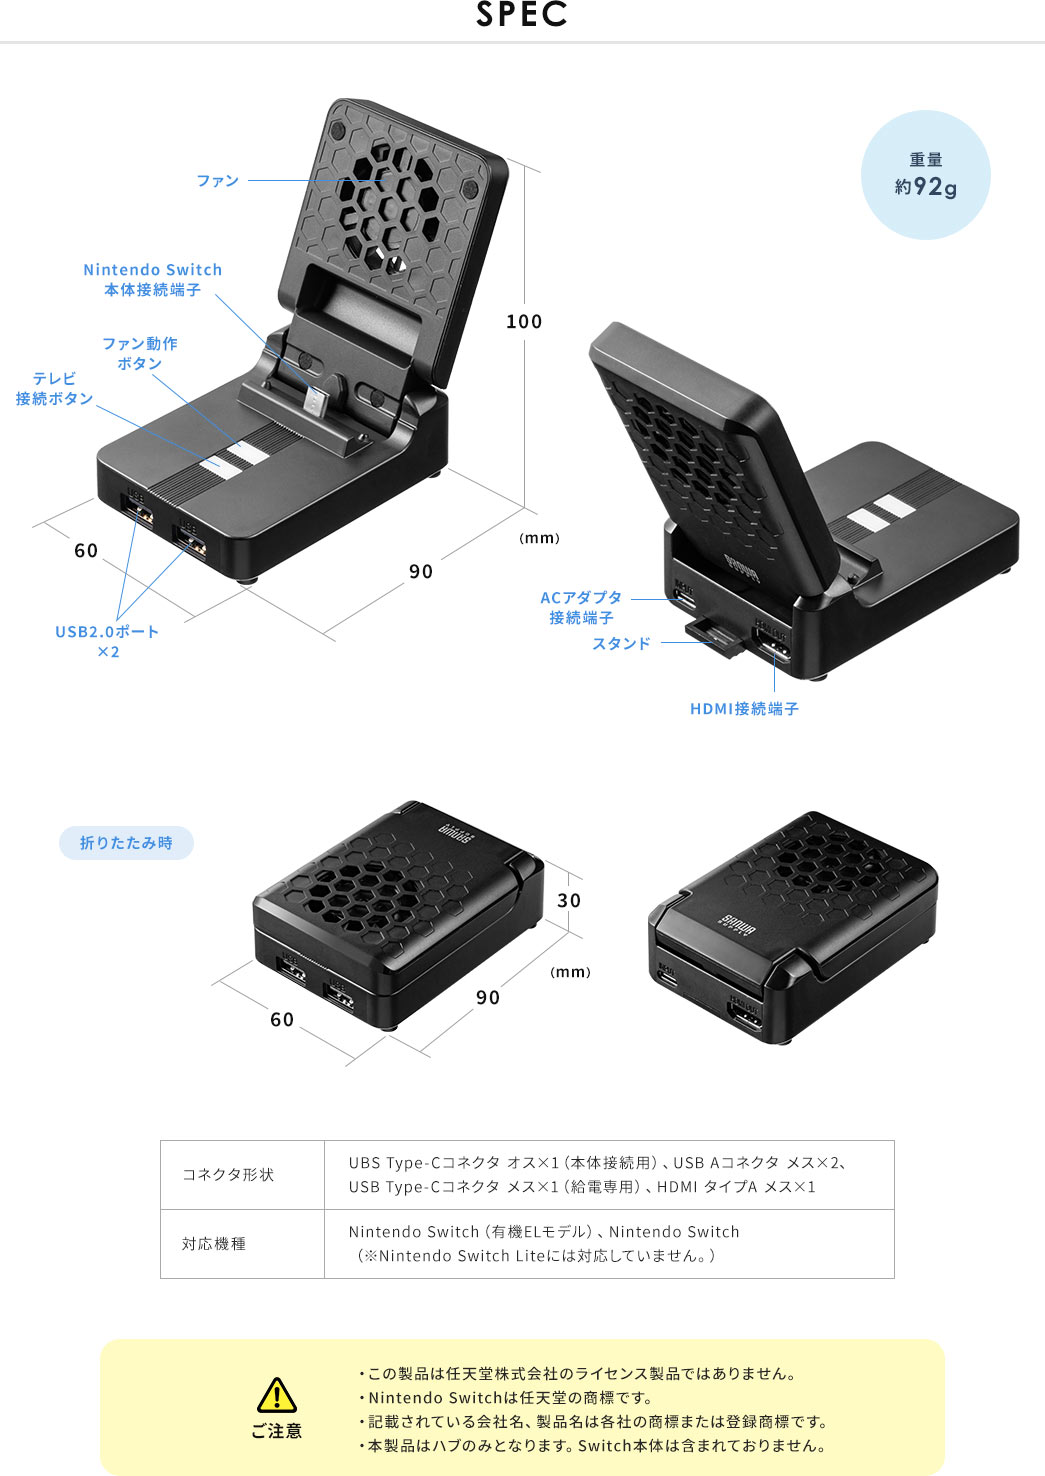 SPEC。重量約92g。コネクタ形状:UBSType-Cコネクタ オス×1(本体接続用)、USBAコネクタ メス×2、USBType-Cコネクタ メス×1(給電専用)、HDMIタイプAメス×1。対応機種:Nintendo Switch(有機ELモデル)、Nintendo Switch (※NintendoSwitchLiteには対応していません。)。ご注意:・この製品は任天堂株式会社のライセンス製品ではありません。・NintendoSwitchは任天堂の商標です。・記載されている会社名、製品名は各社の商標または登録商標です。・本製品はハブのみとなります。Switch本体は含まれておりません。